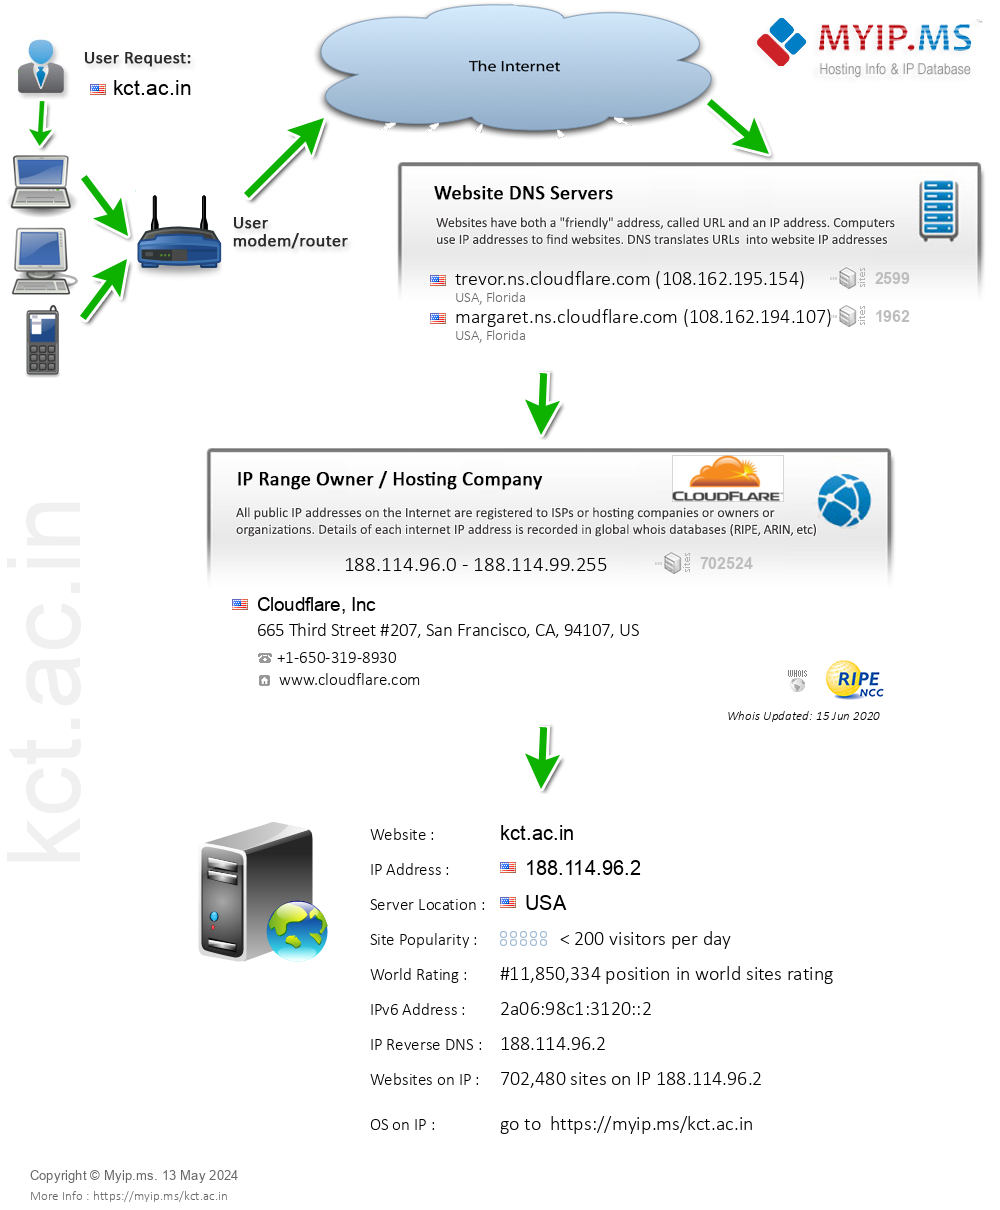 Kct.ac.in - Website Hosting Visual IP Diagram